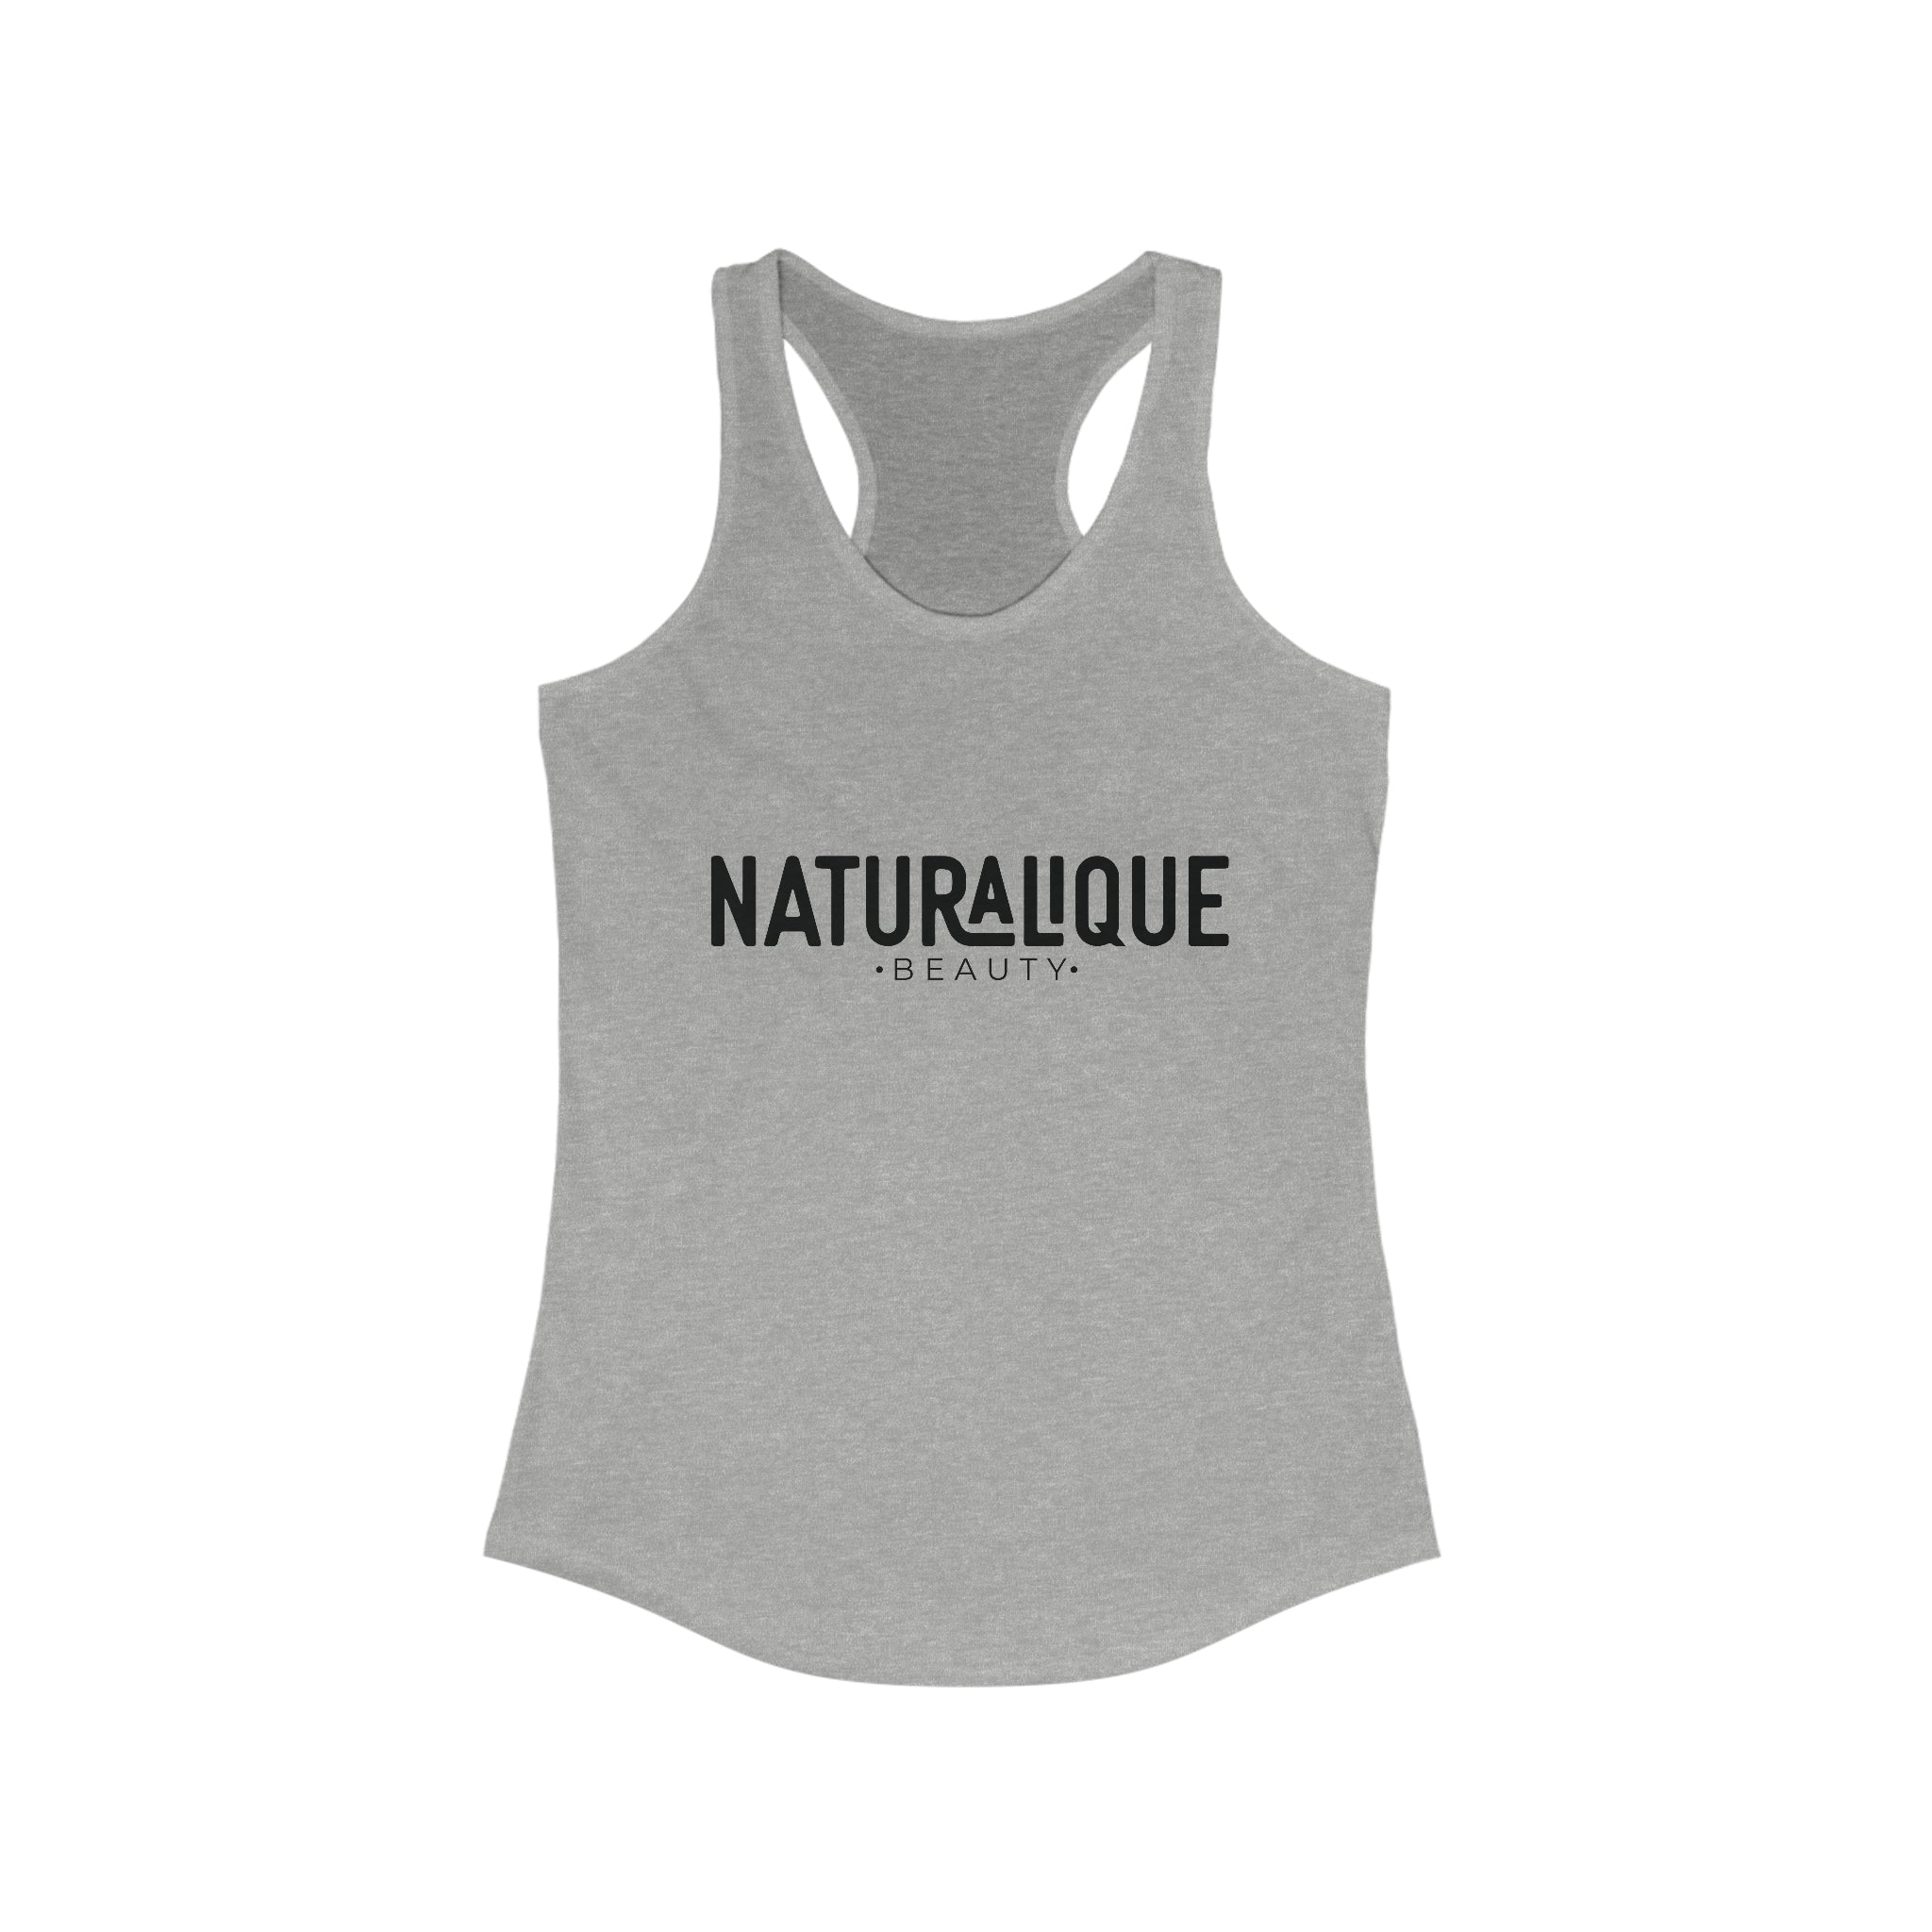 Naturalique Beauty Tank Top